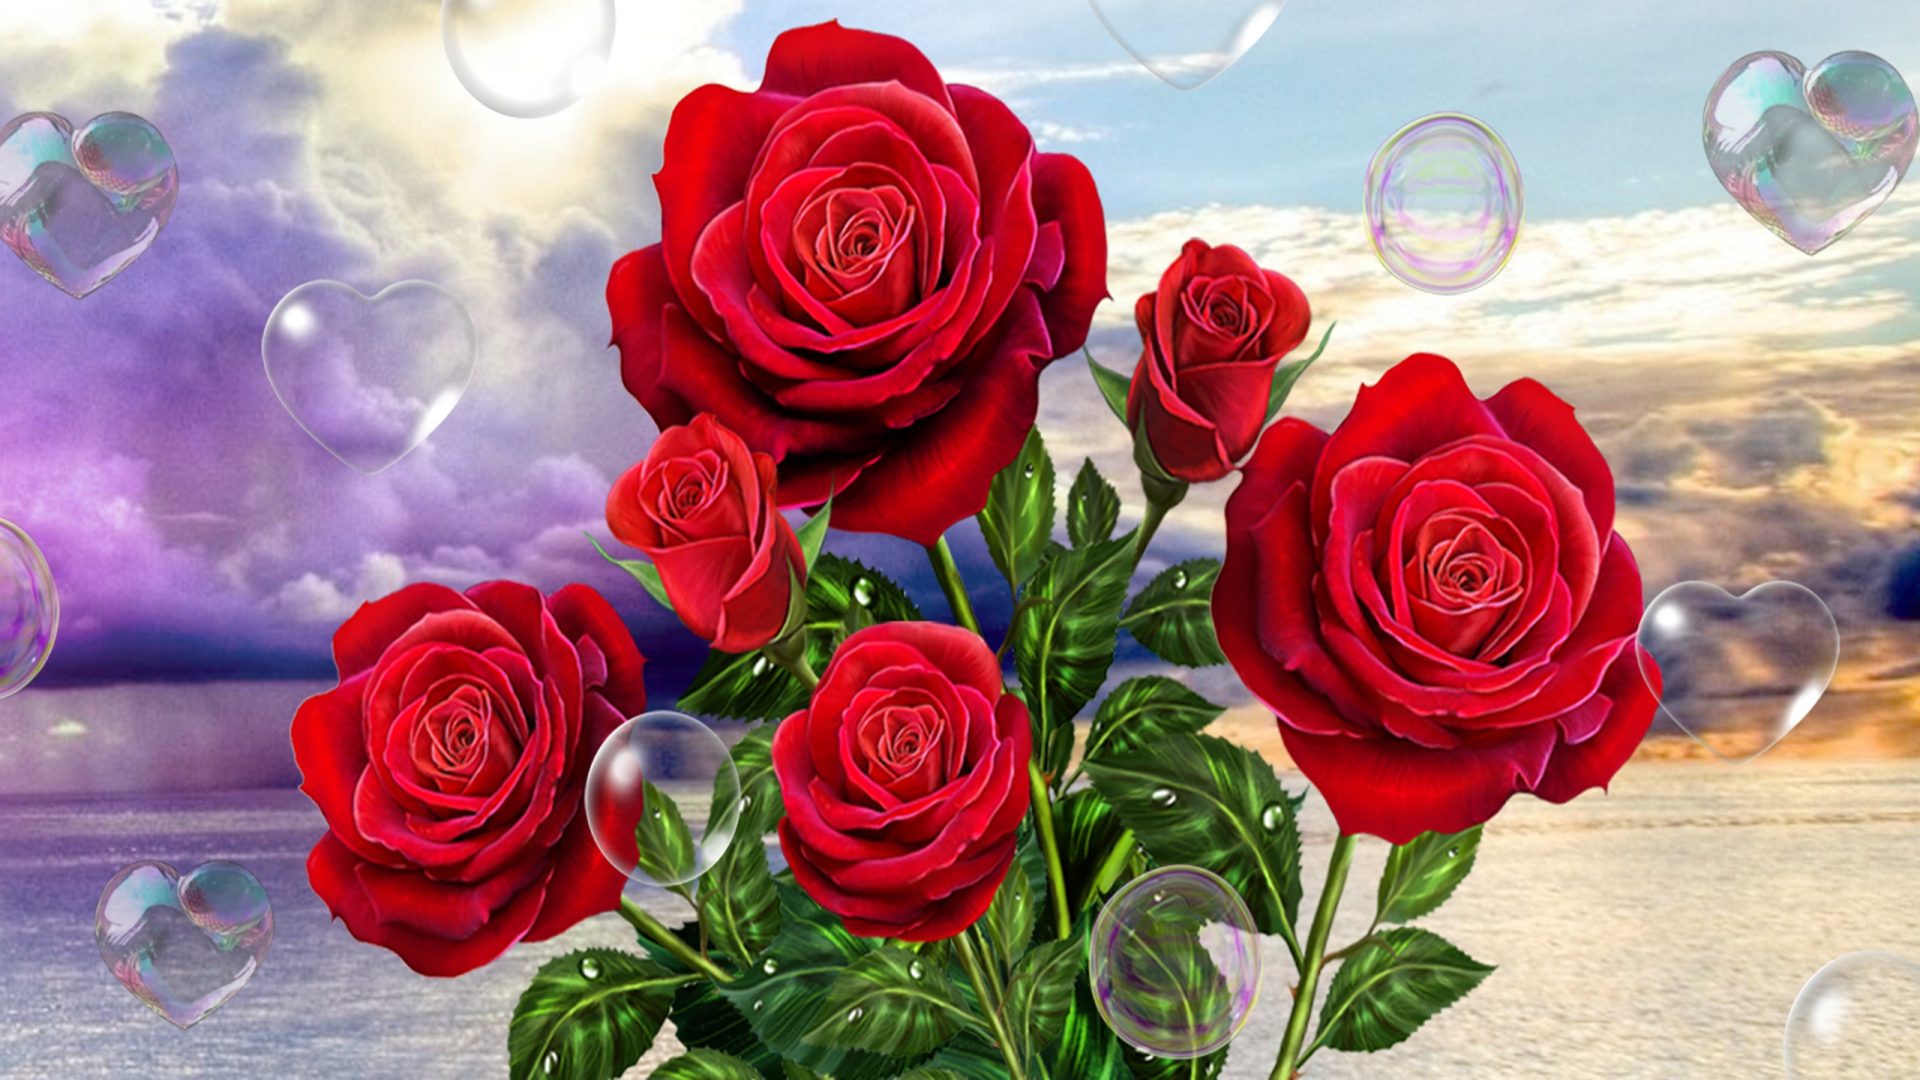 rosa roja live wallpaper descarga gratuita,flor,rosas de jardín,rosa,rojo,familia rosa